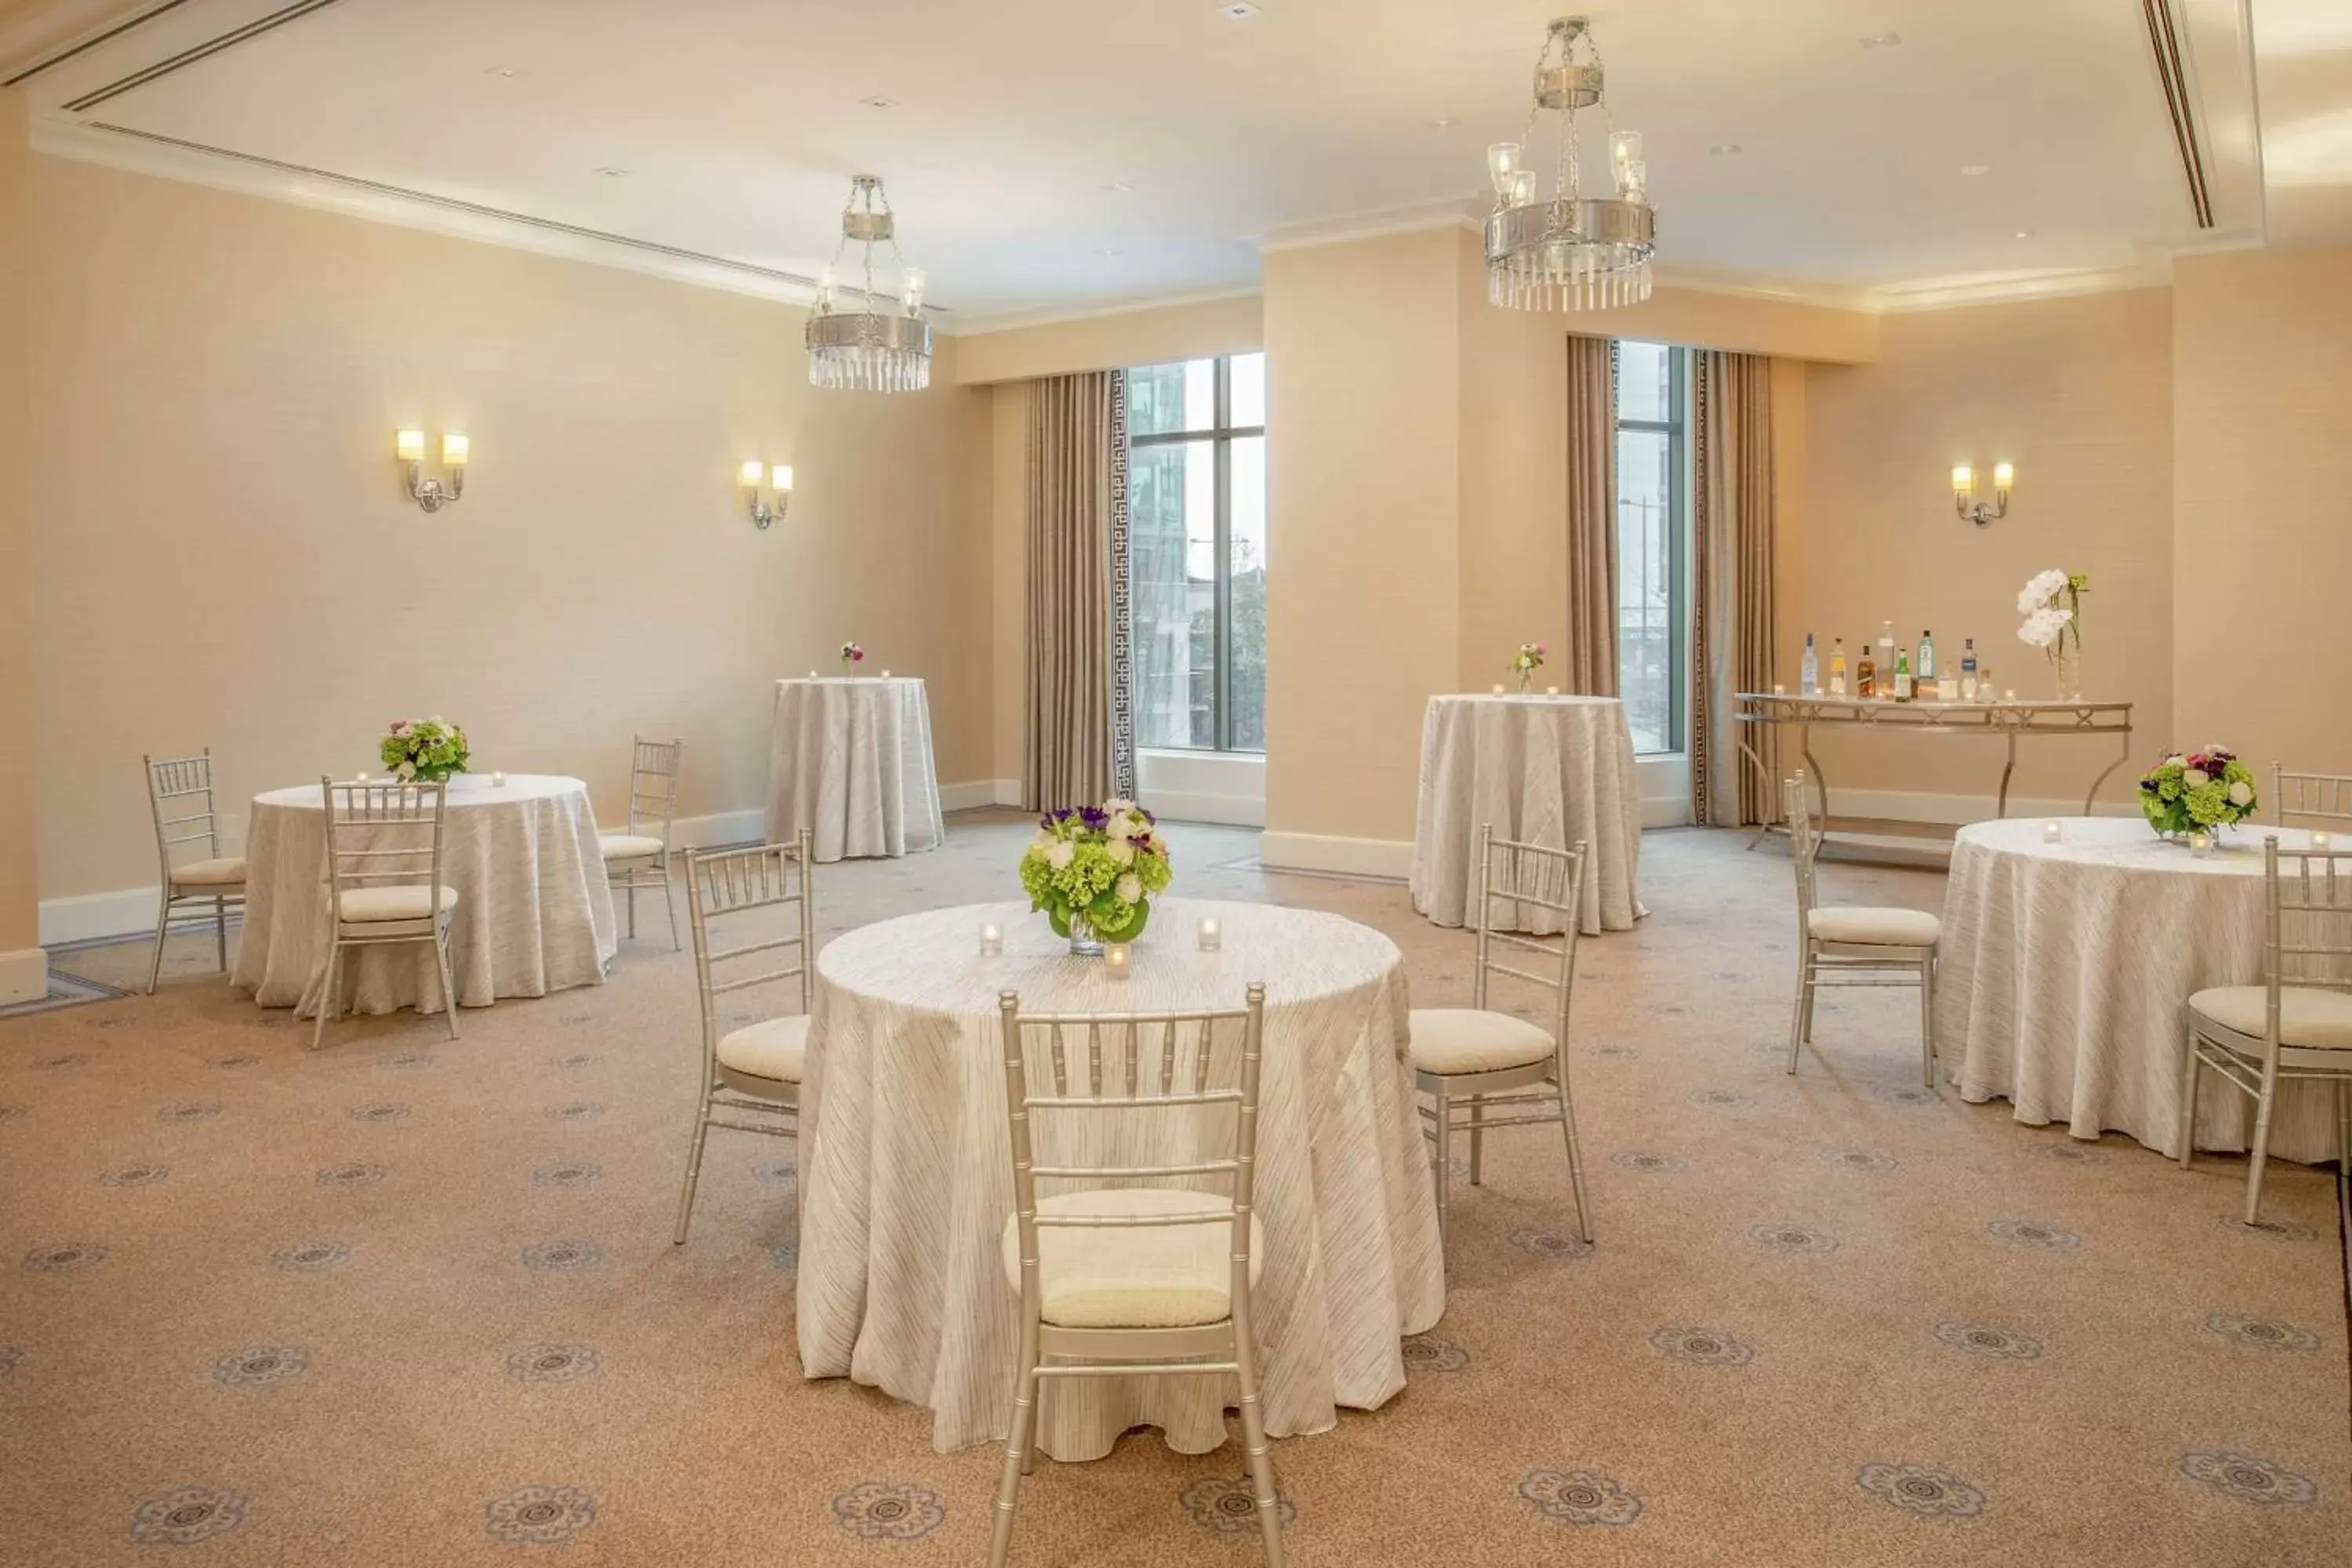 Meeting/conference room, Banquet Facilities in Waldorf Astoria Atlanta Buckhead